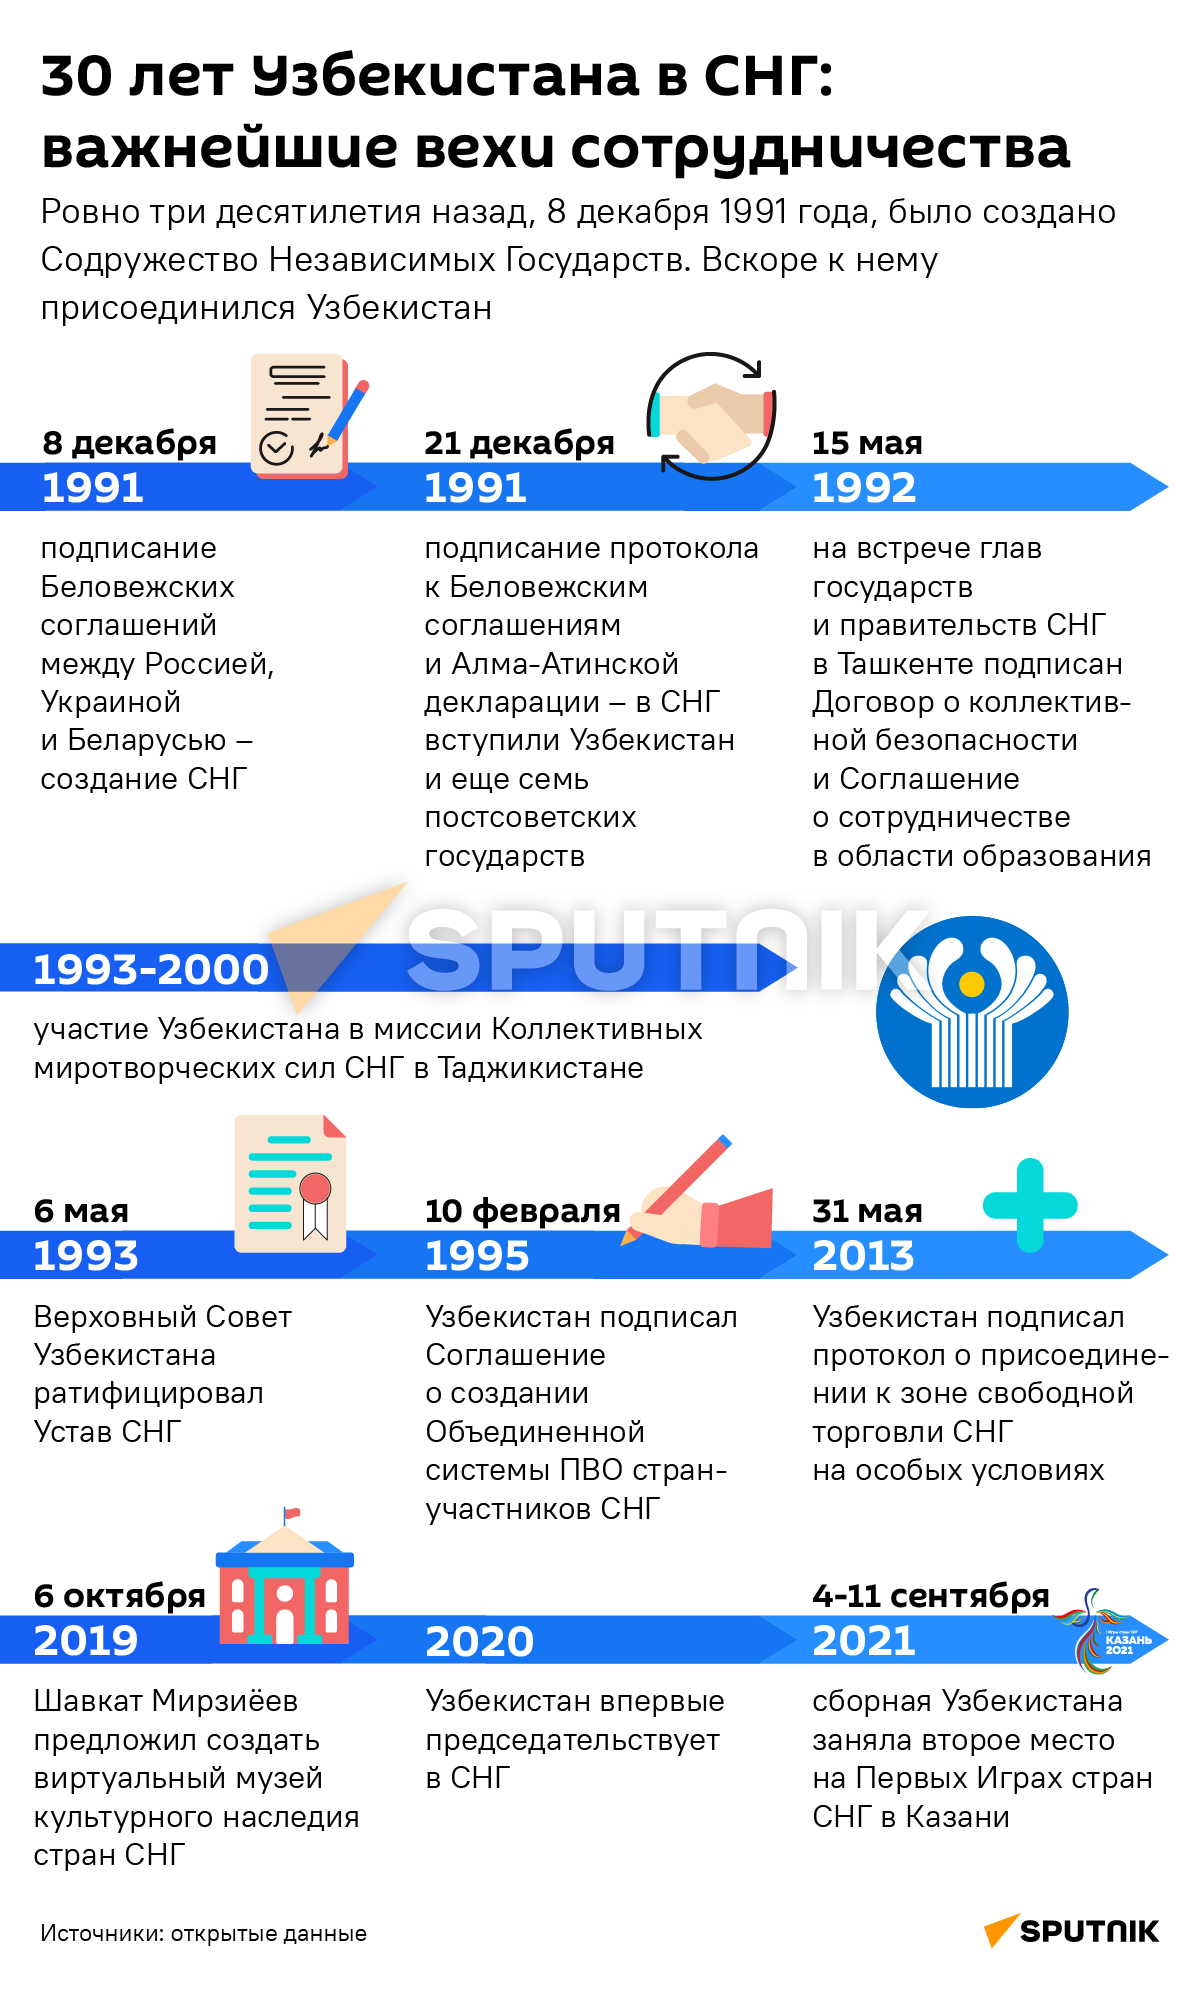 30 лет Узбекистан в СНГ деск - Sputnik Узбекистан